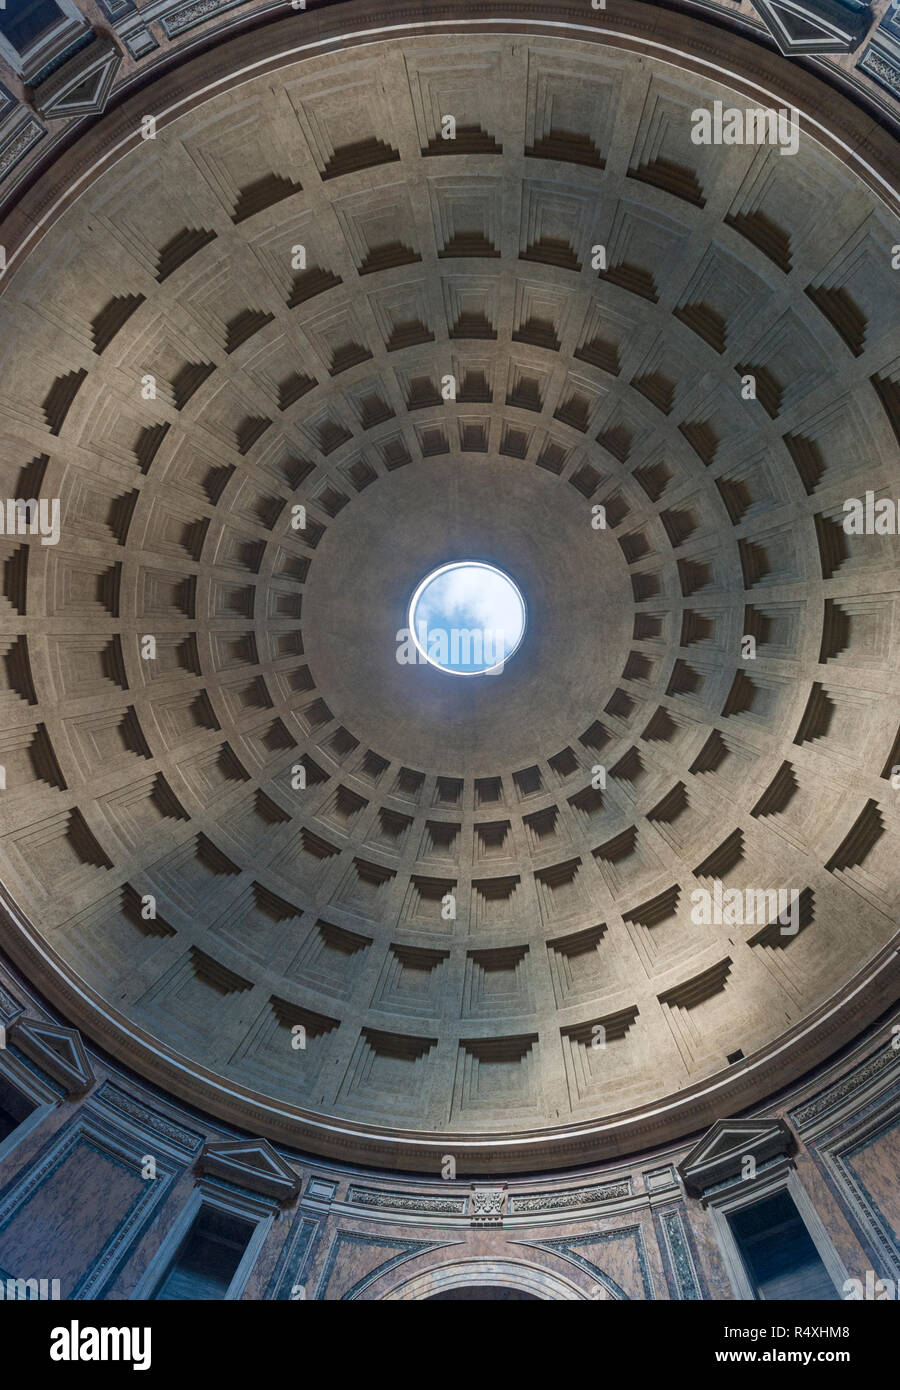 L'intérieur du dôme du Panthéon de Rome. édifice romain d'origine / Temple maintenant toujours fonctionnel comme une église Banque D'Images